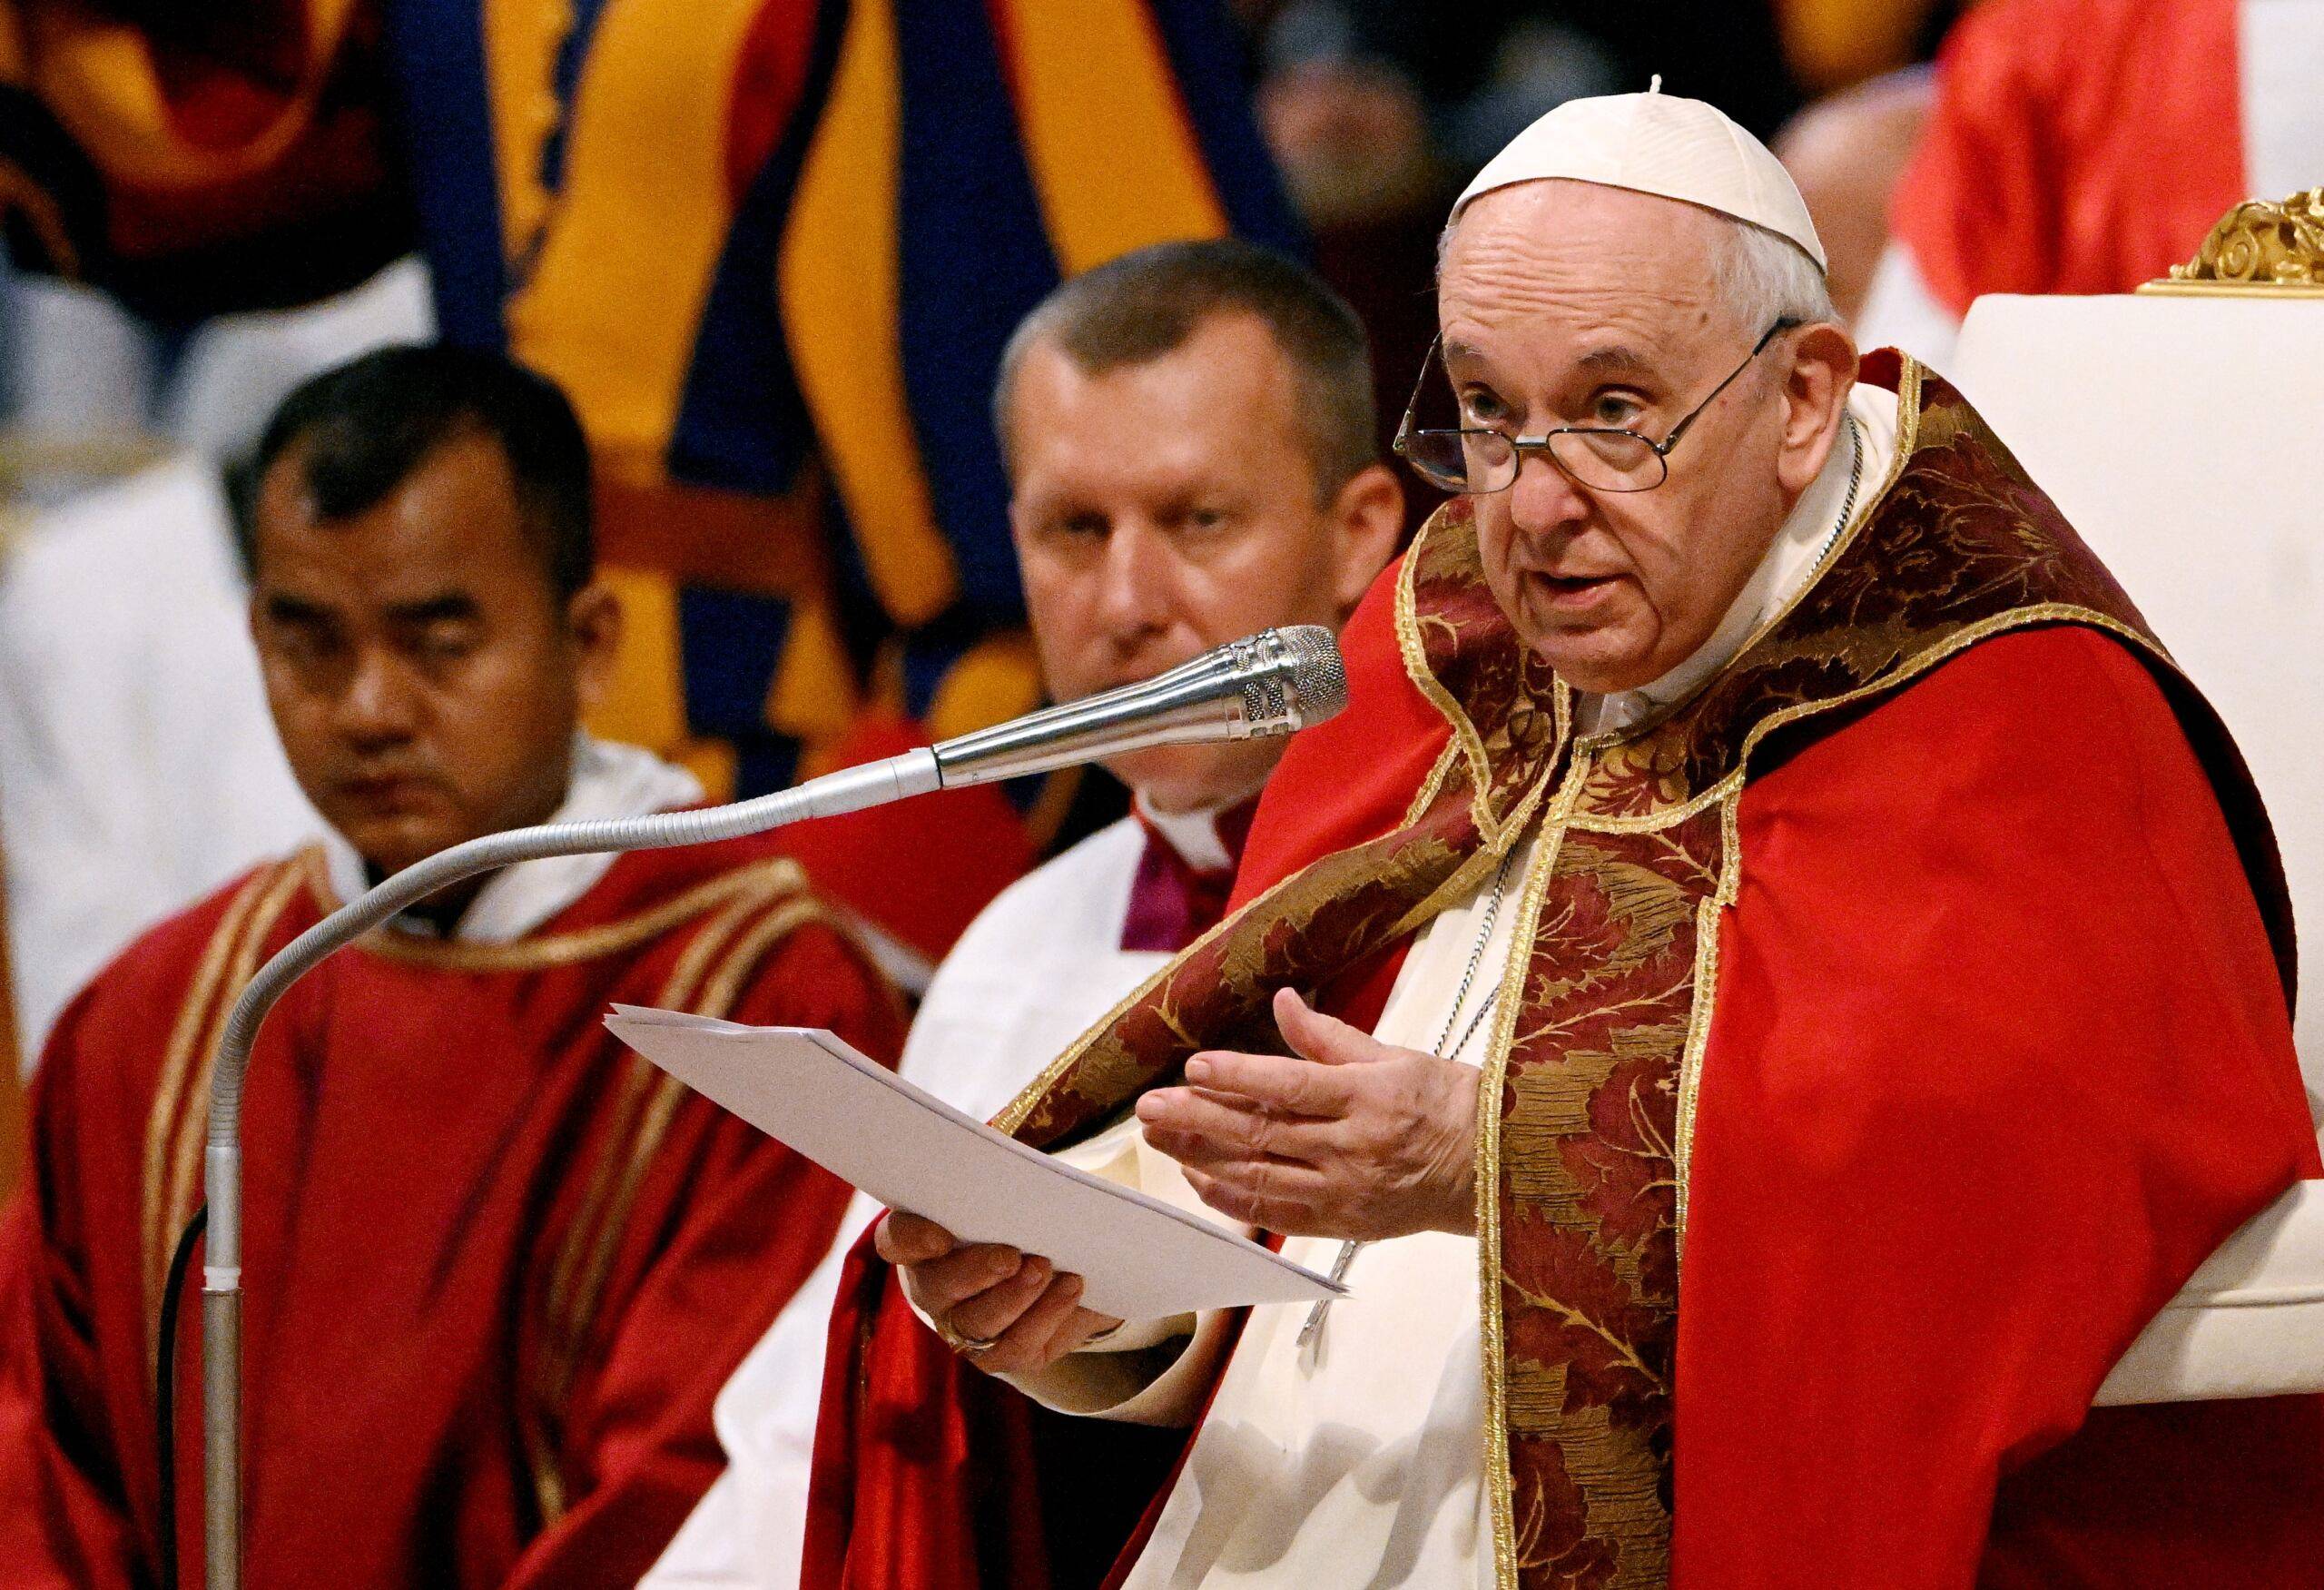 Papież Franciszek w czerwnym odzieniu w okulrach wygłąsza kazanie, przed nim mikrofon